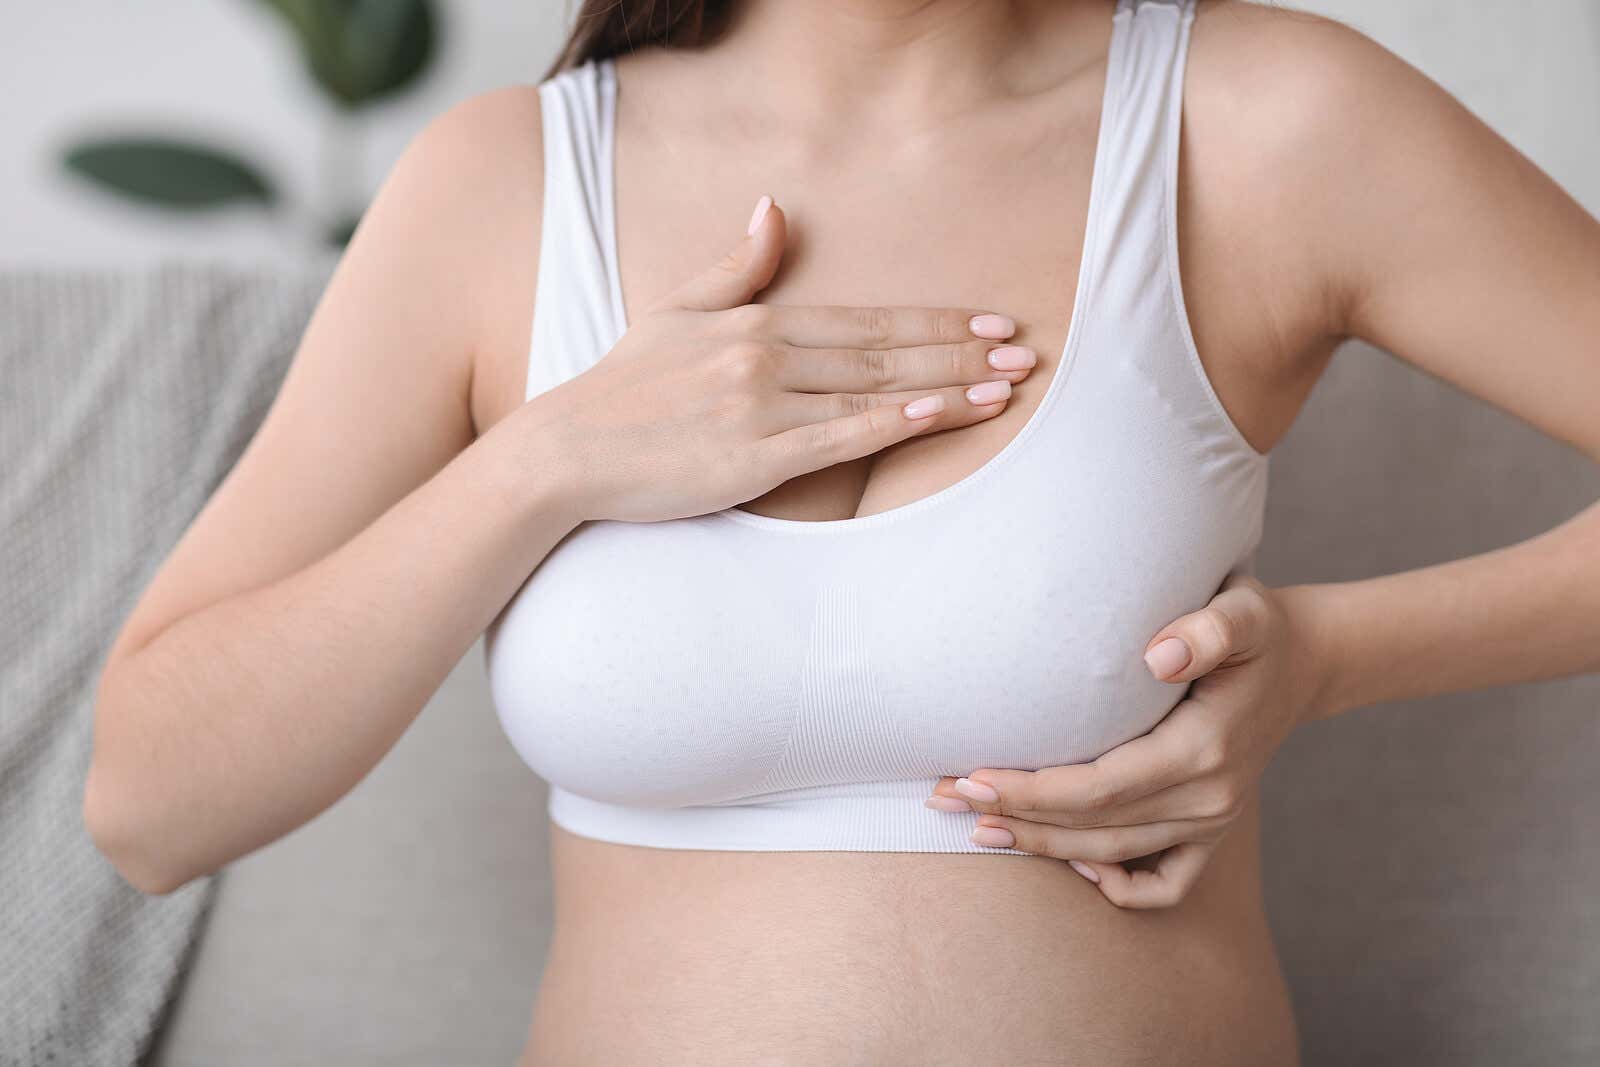 Dolor de los senos o mastalgia: lo que debes saber